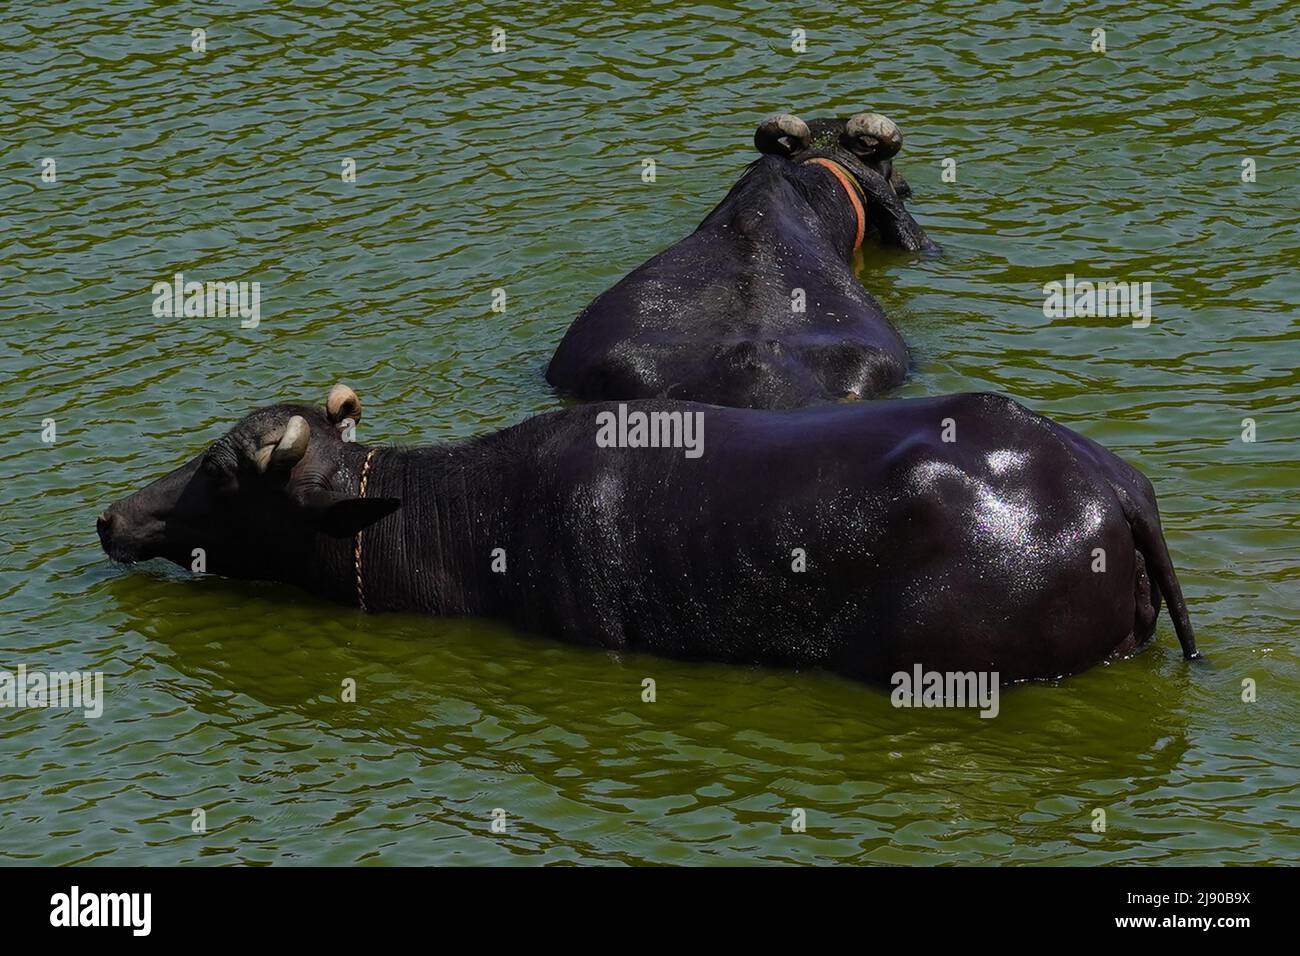 Bufali fare un tuffo nel lago in una calda giornata estiva nel villaggio alla periferia di Ajmer, India il 13 maggio 2022. Foto di ABACAPRESS.COM Foto Stock